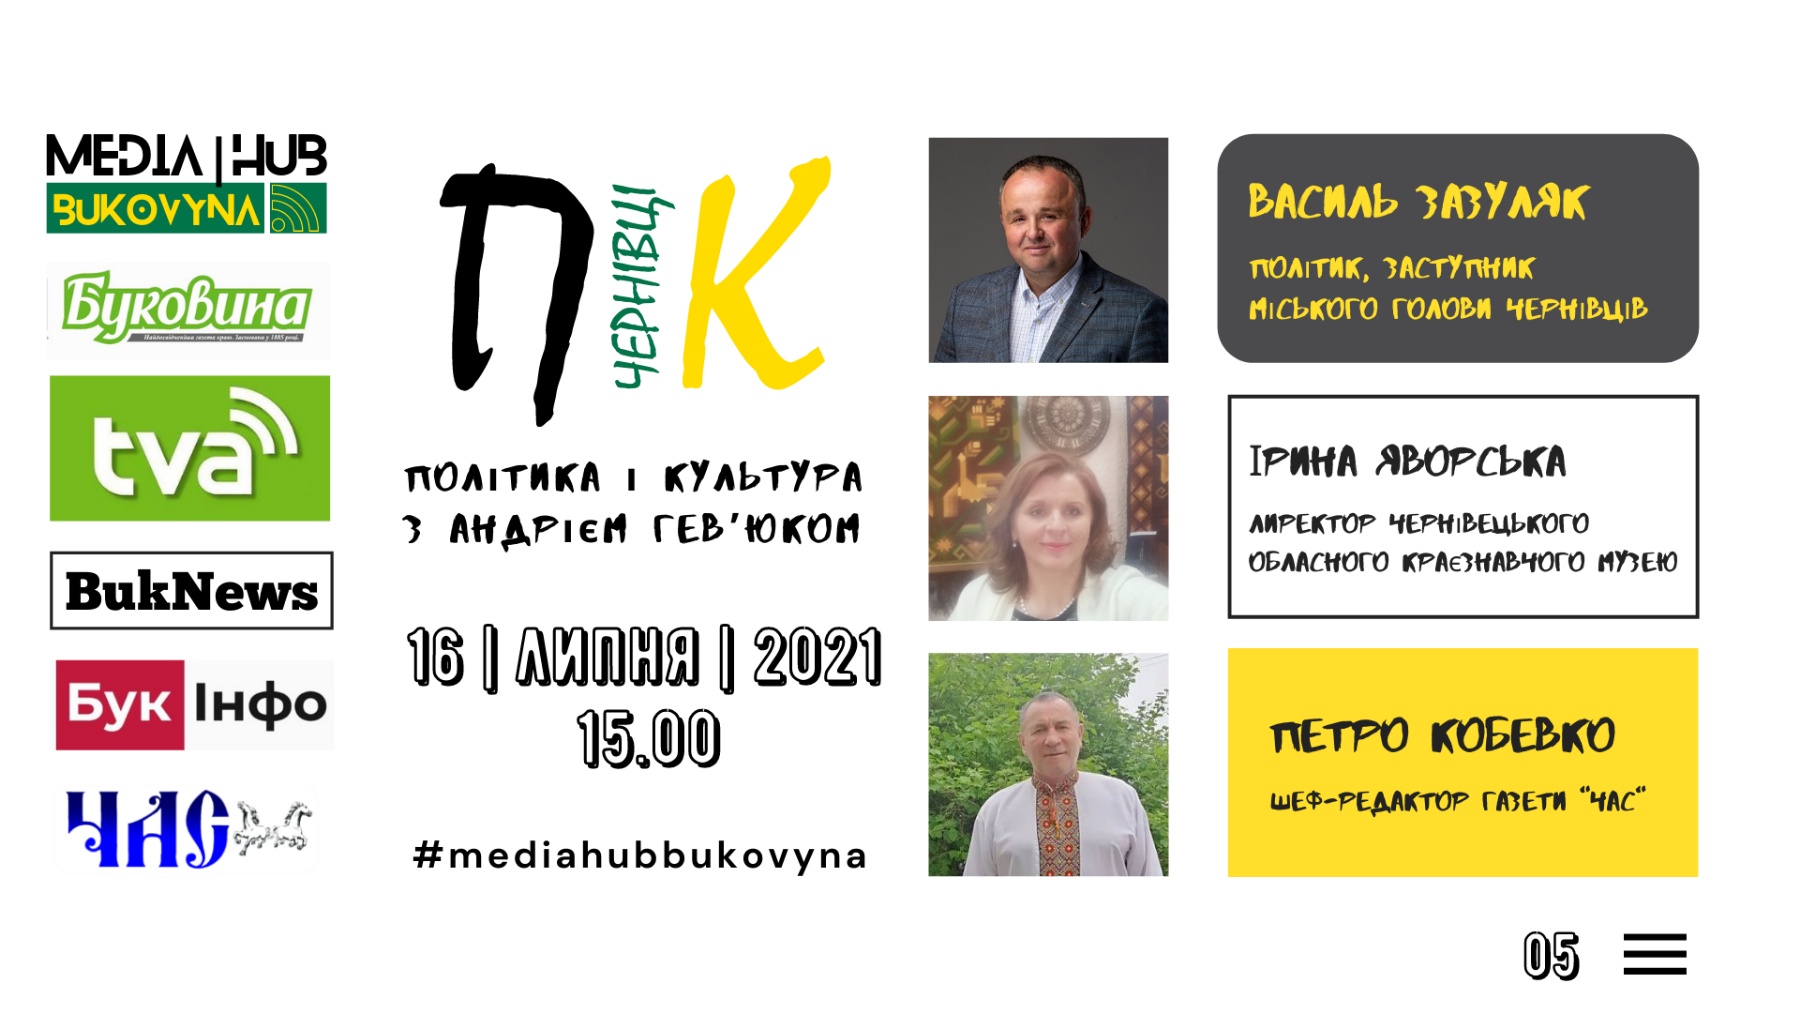 Зазуляк, Яворська і Кобевко говоритимть сьогодні в прямому ефірі про політику і культуру у Чернівцях 